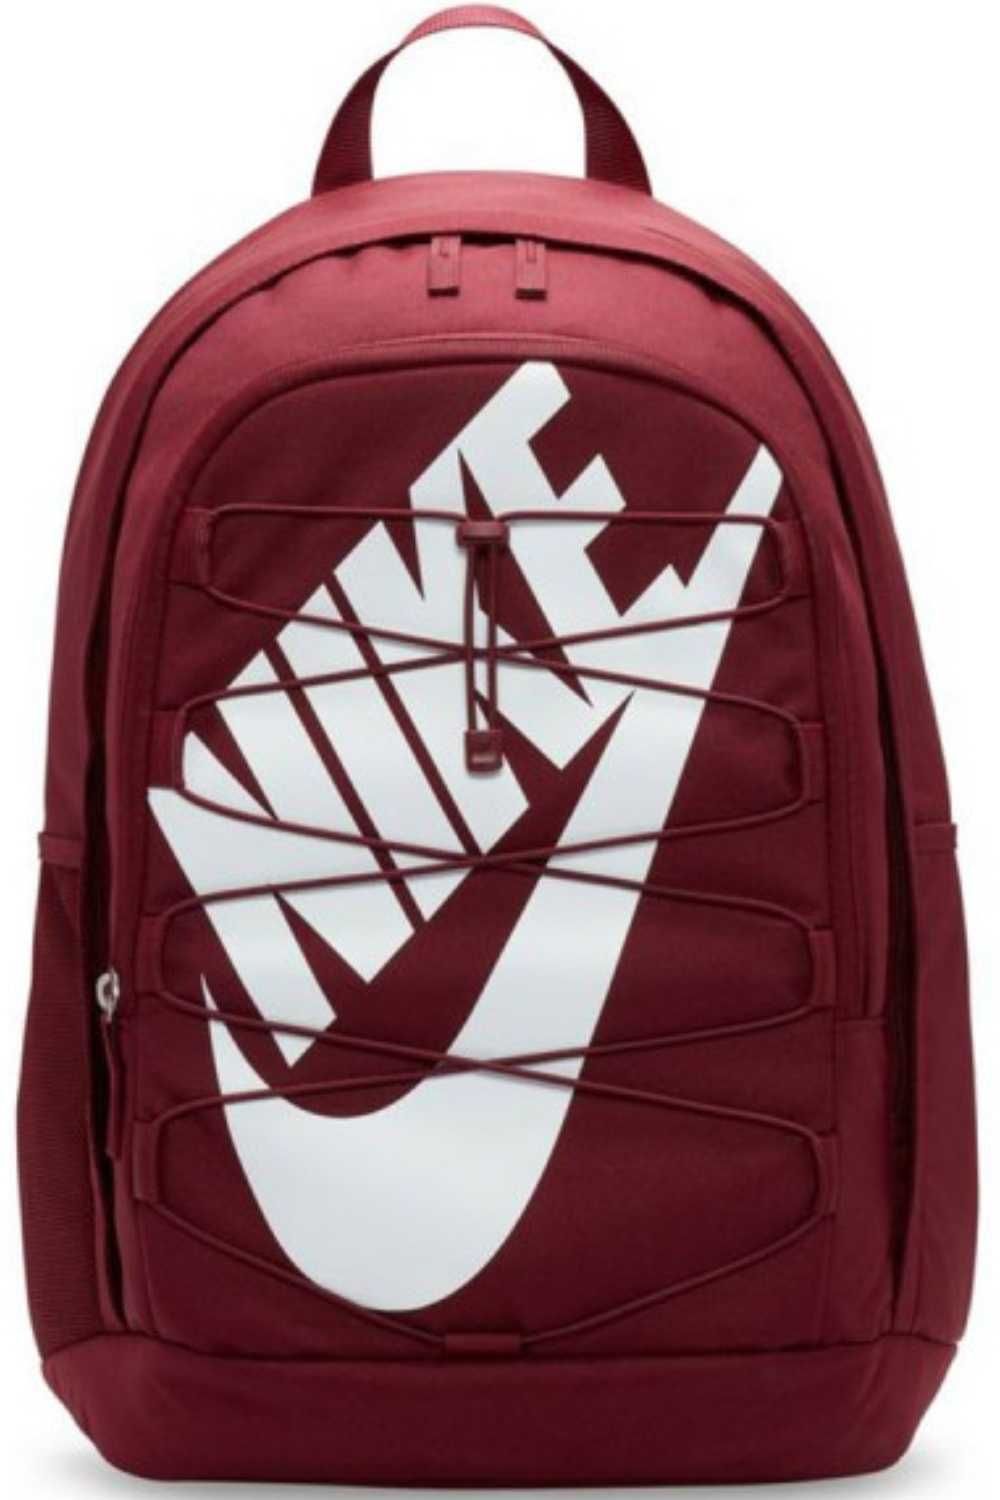 Plecak sportowy szkolny turystyczny Nike Hayward